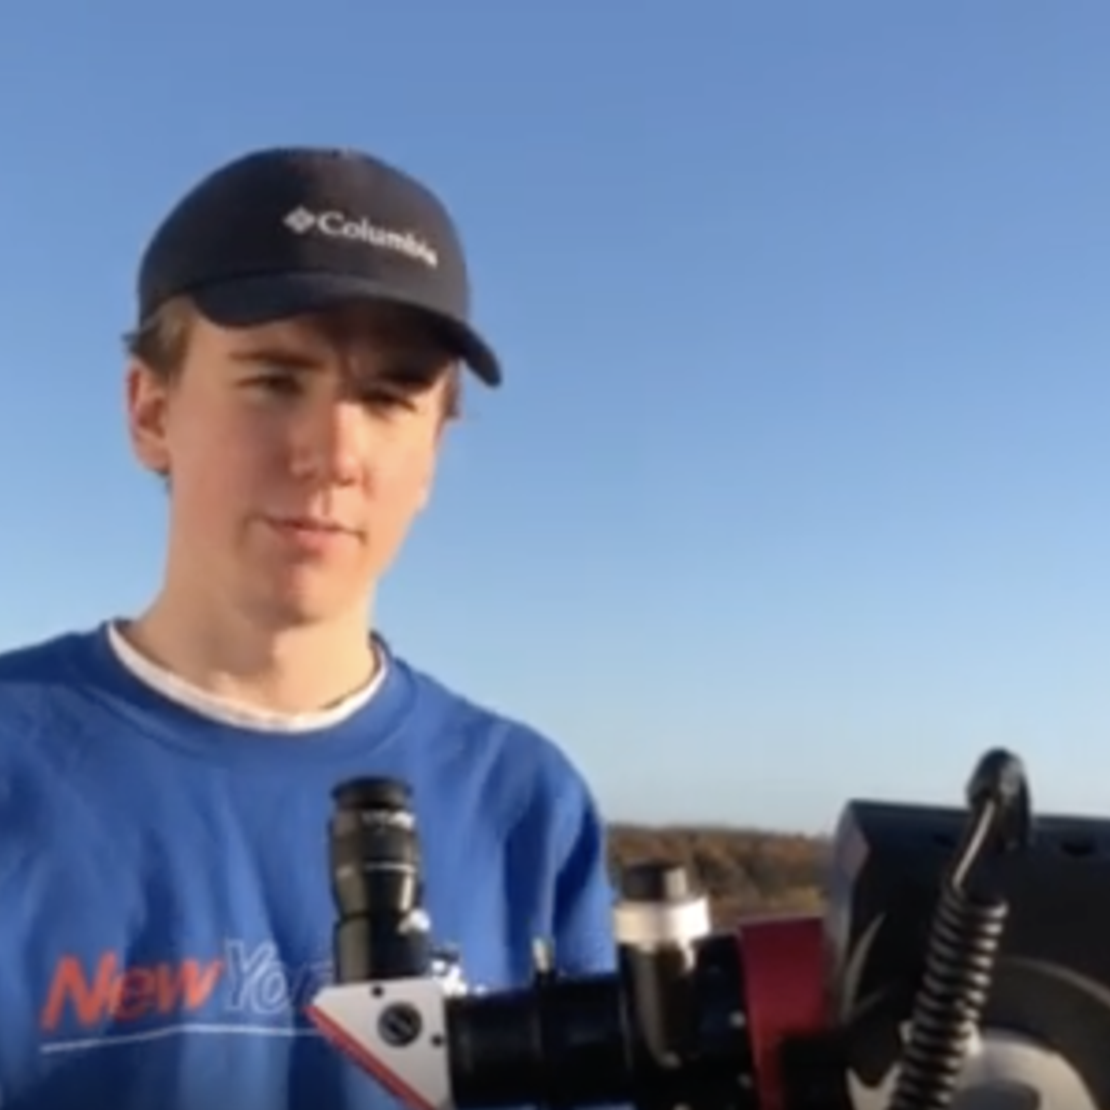 Billede af eleven som præsenterer faget astronomi i videoen